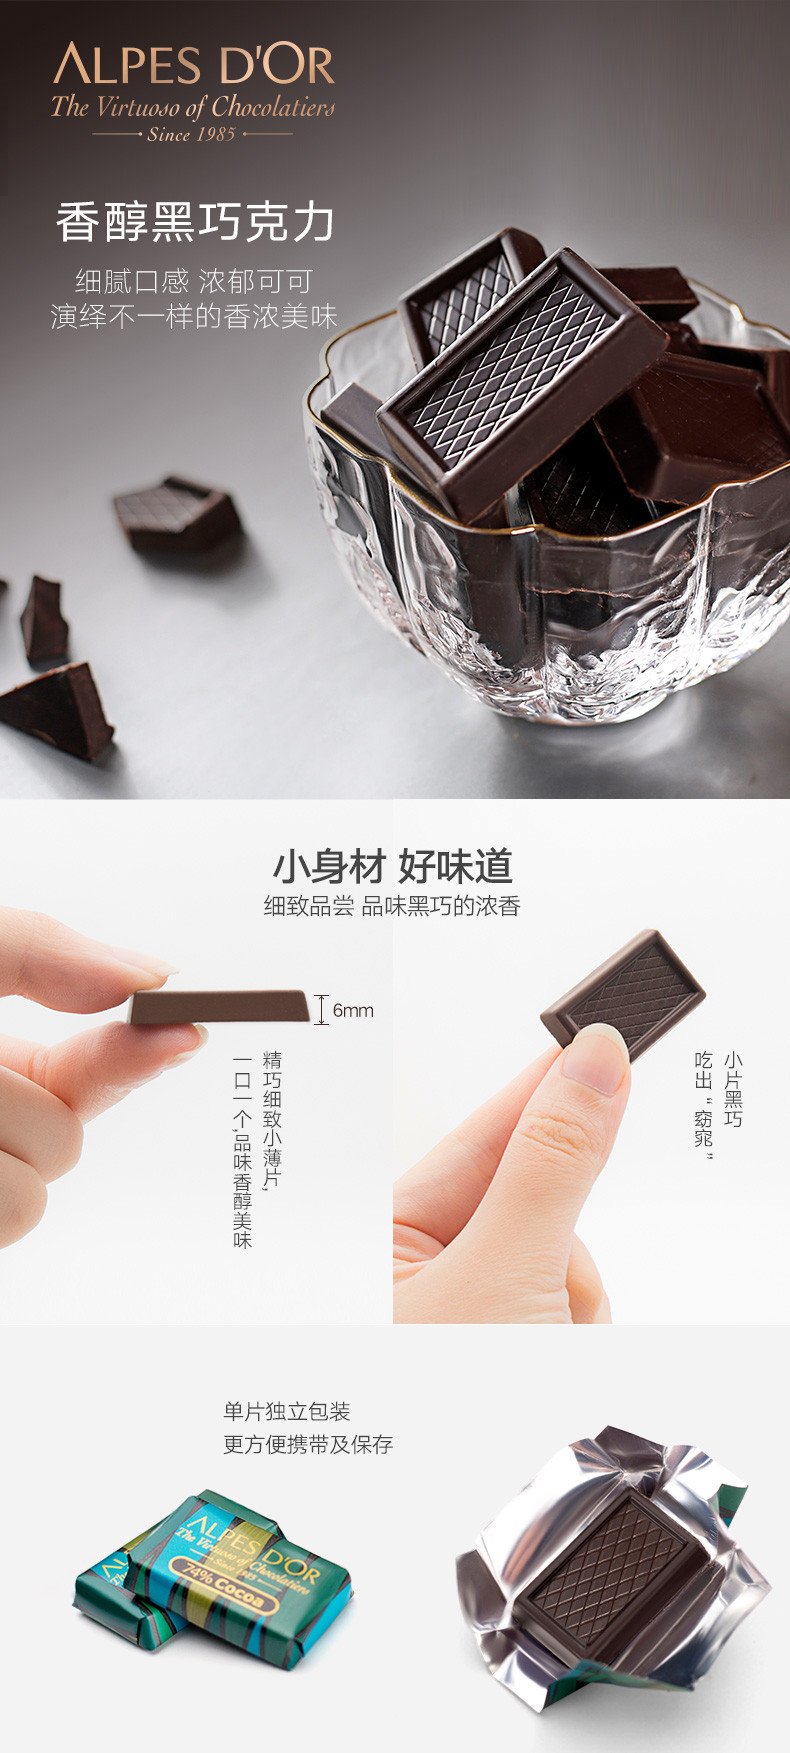 爱普诗 瑞士进口74%迷你黑巧克力 便利携带铁盒装 106g/盒